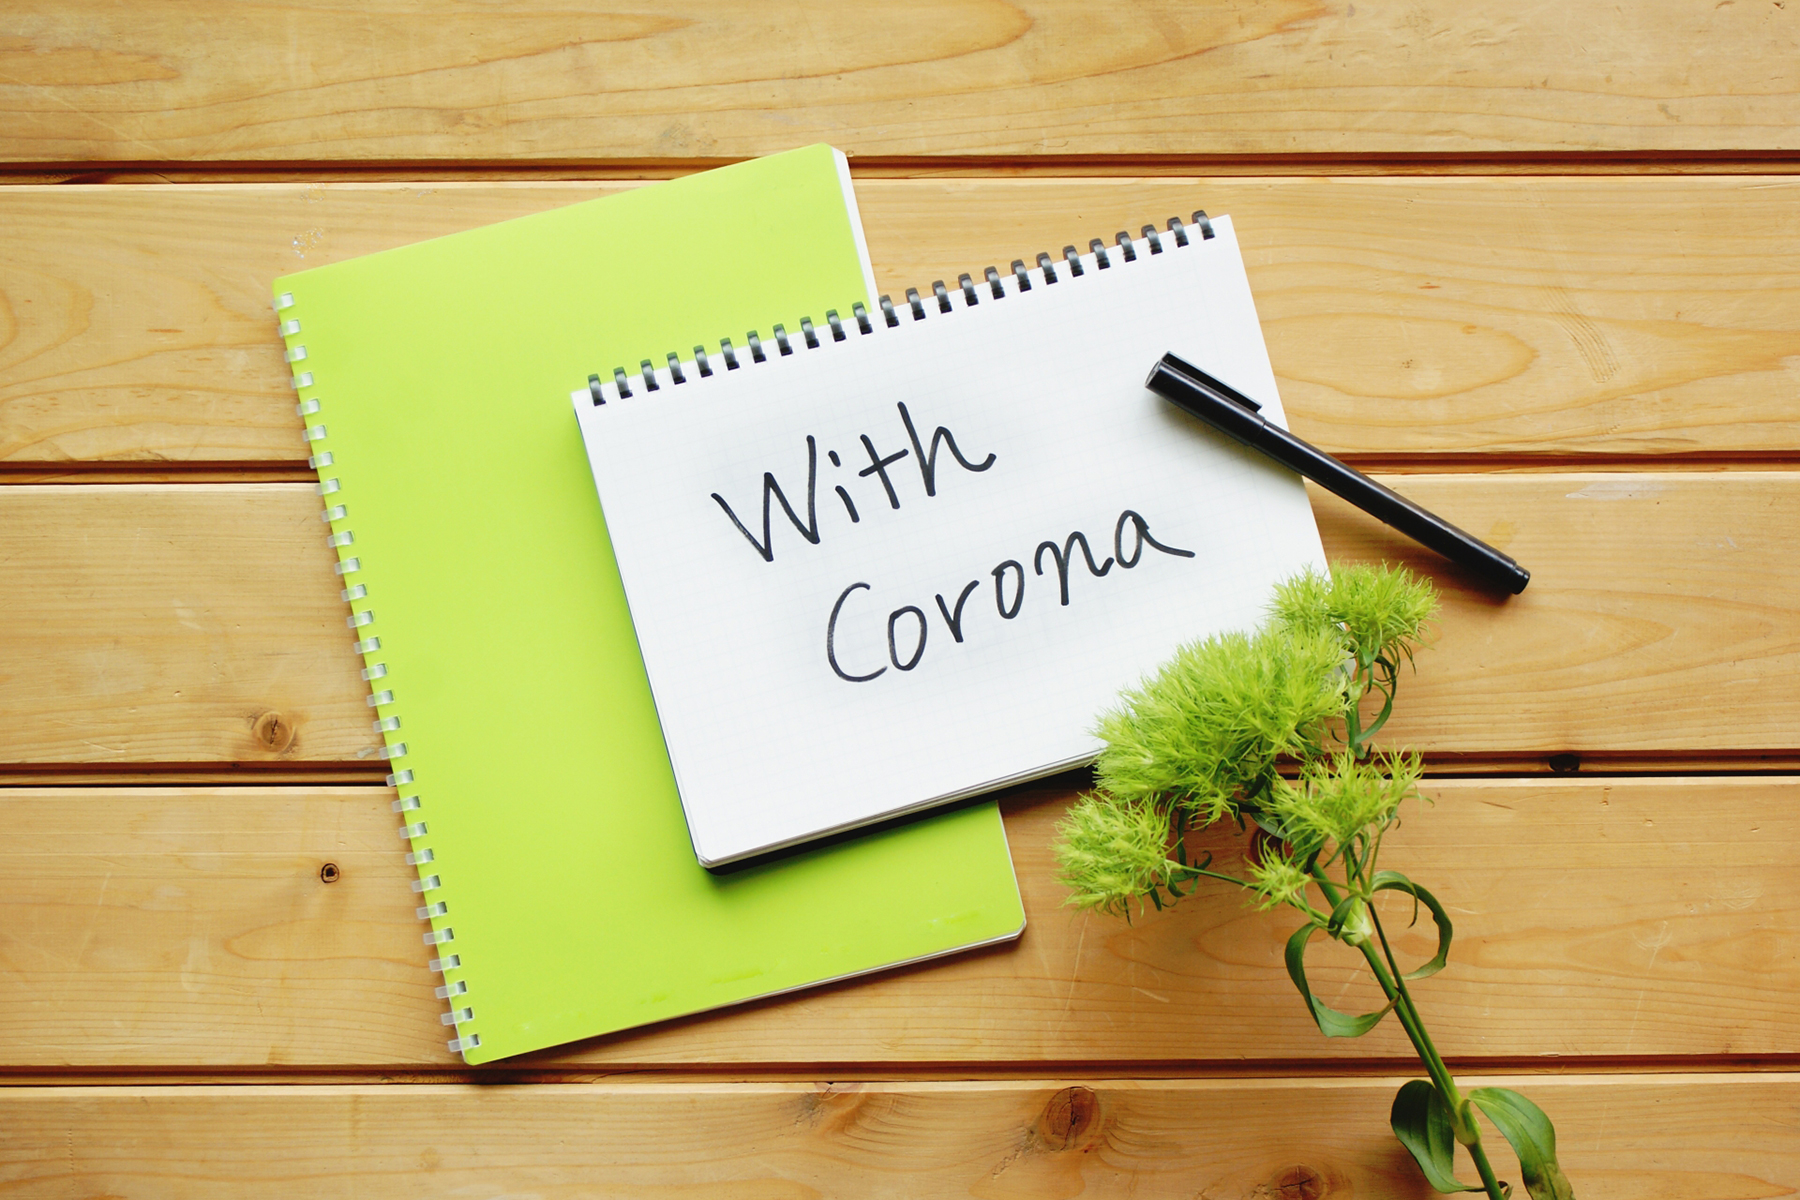 メモに書かれた「With Corona」の文字